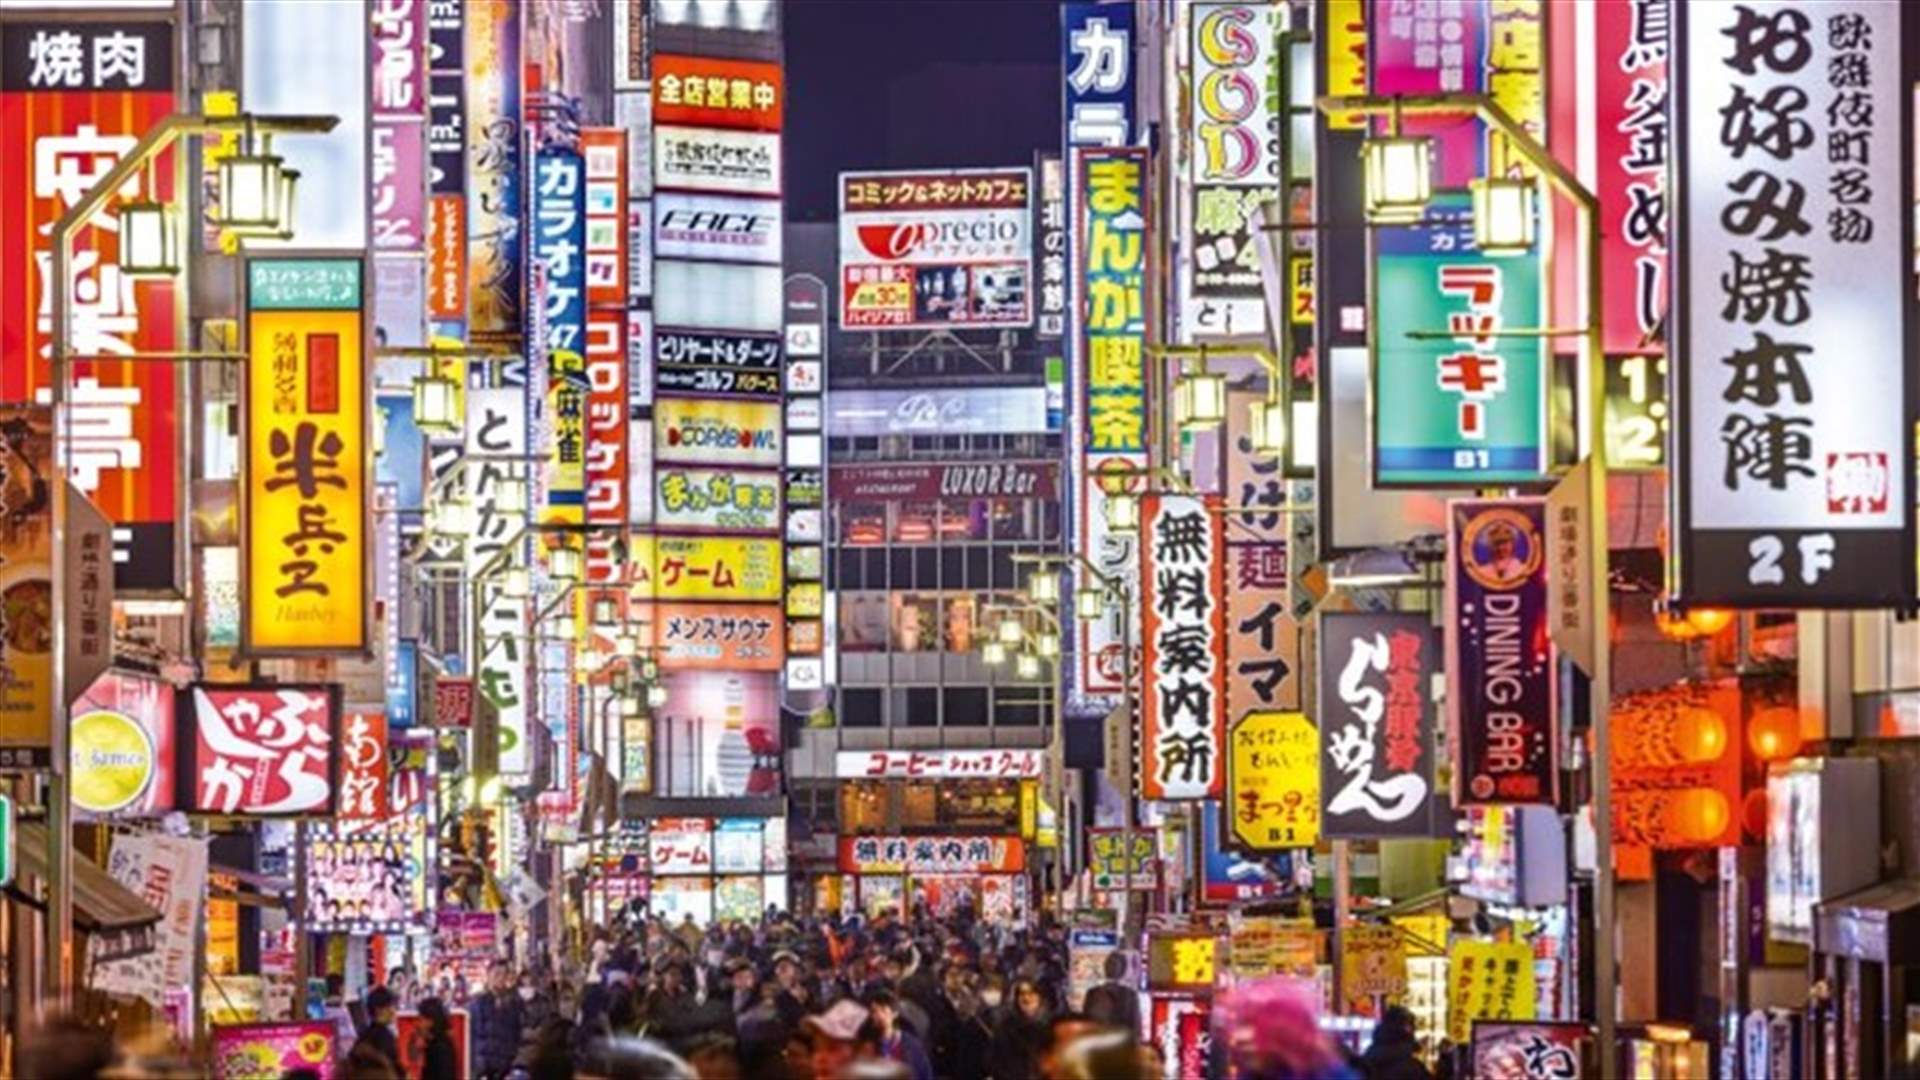 طوكيو تتصدر قائمة أكثر المدن ابتكارا في العالم